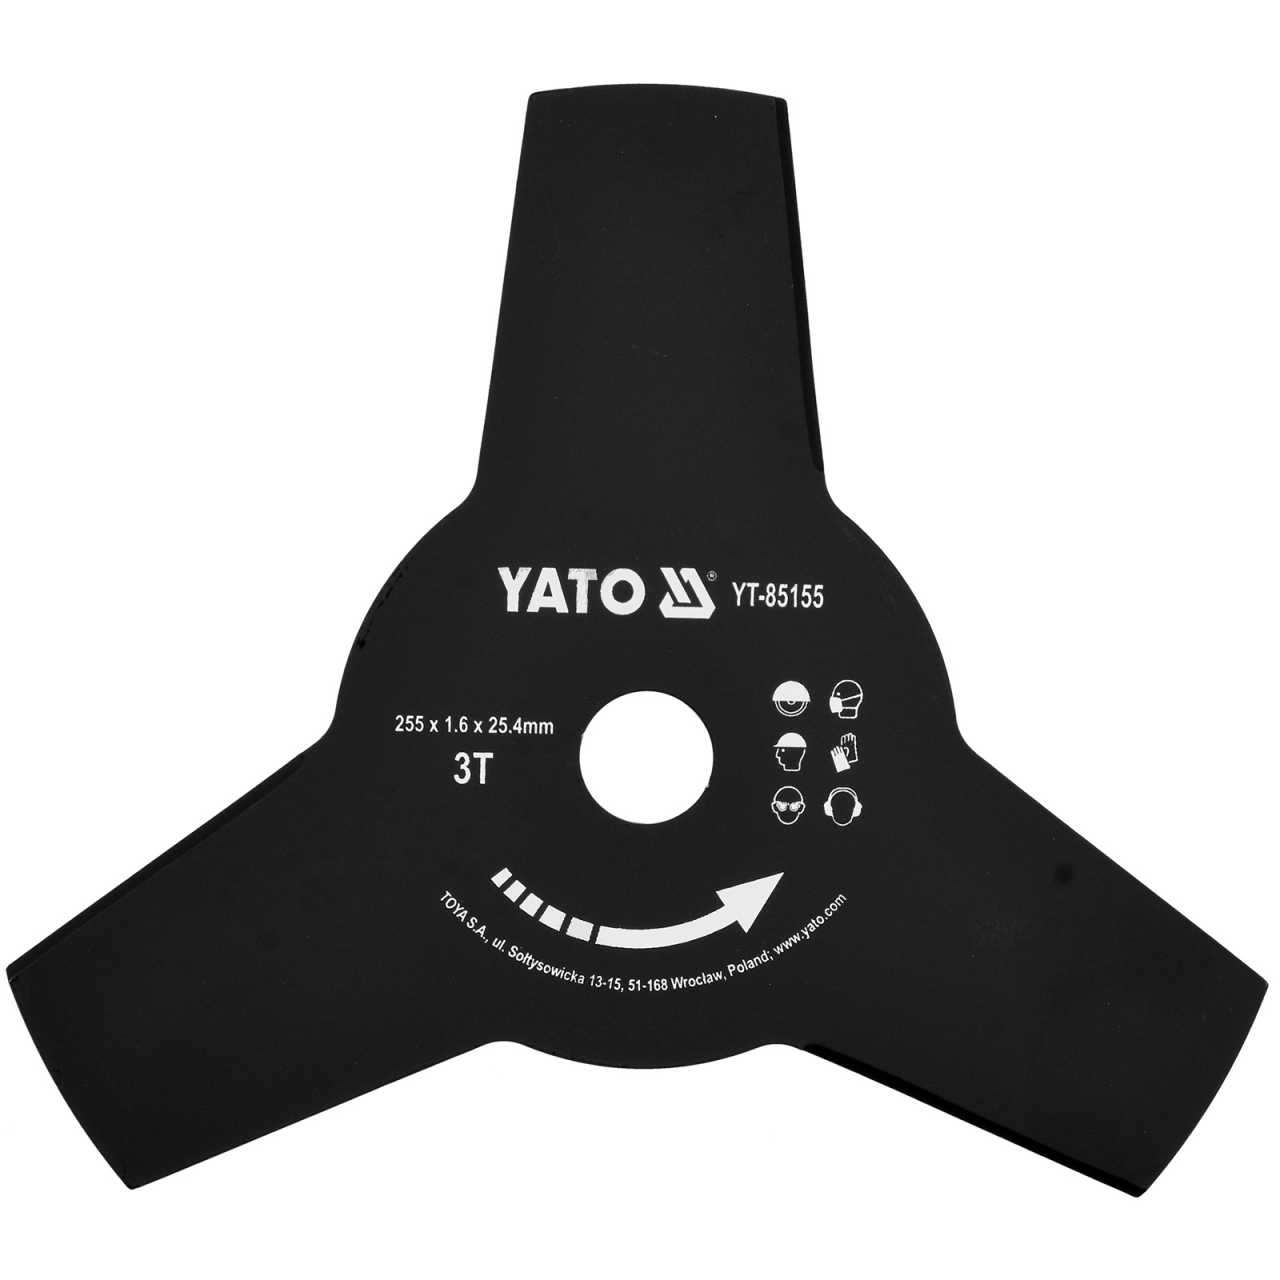 YATO Profi Dickichtmesser für Motorsense | 255 mm | YT-85155